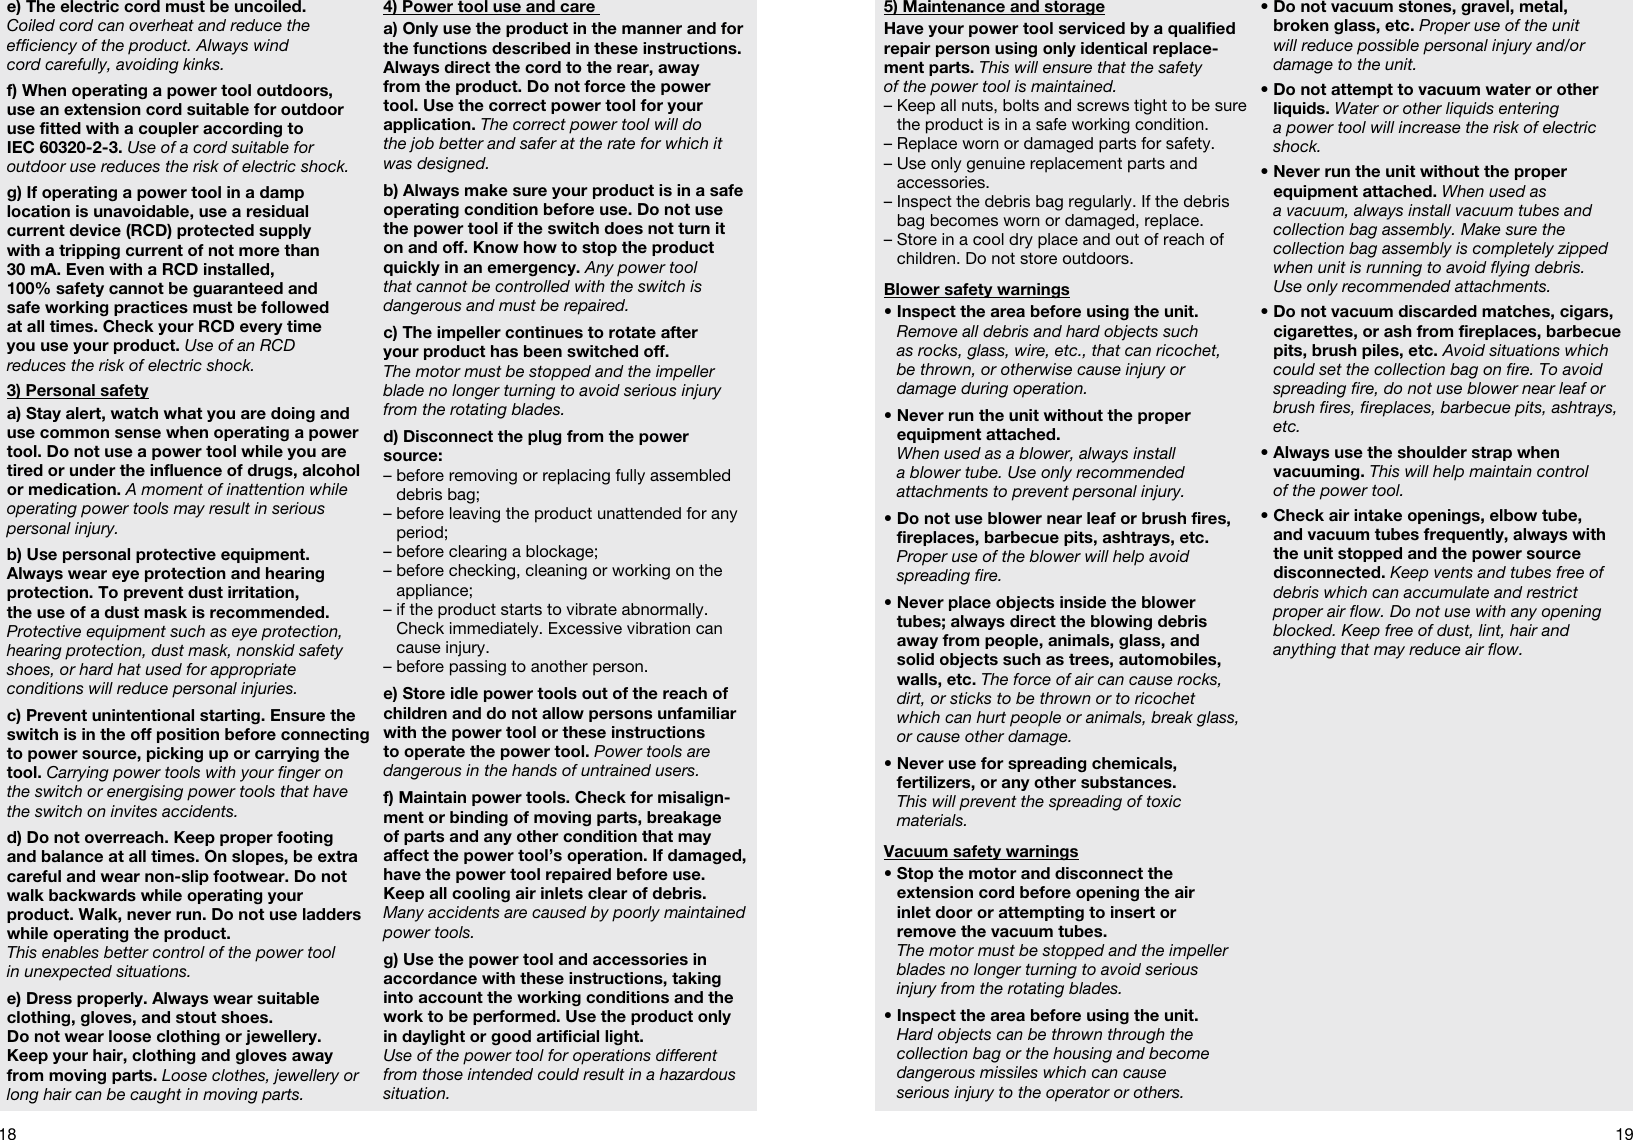 Page 3 of 10 - Gardena Gardena-Ergojet-Ej3000-Users-Manual- OM, Gardena, Blower/vacuum, Art 09332-20, 2012-01  Gardena-ergojet-ej3000-users-manual